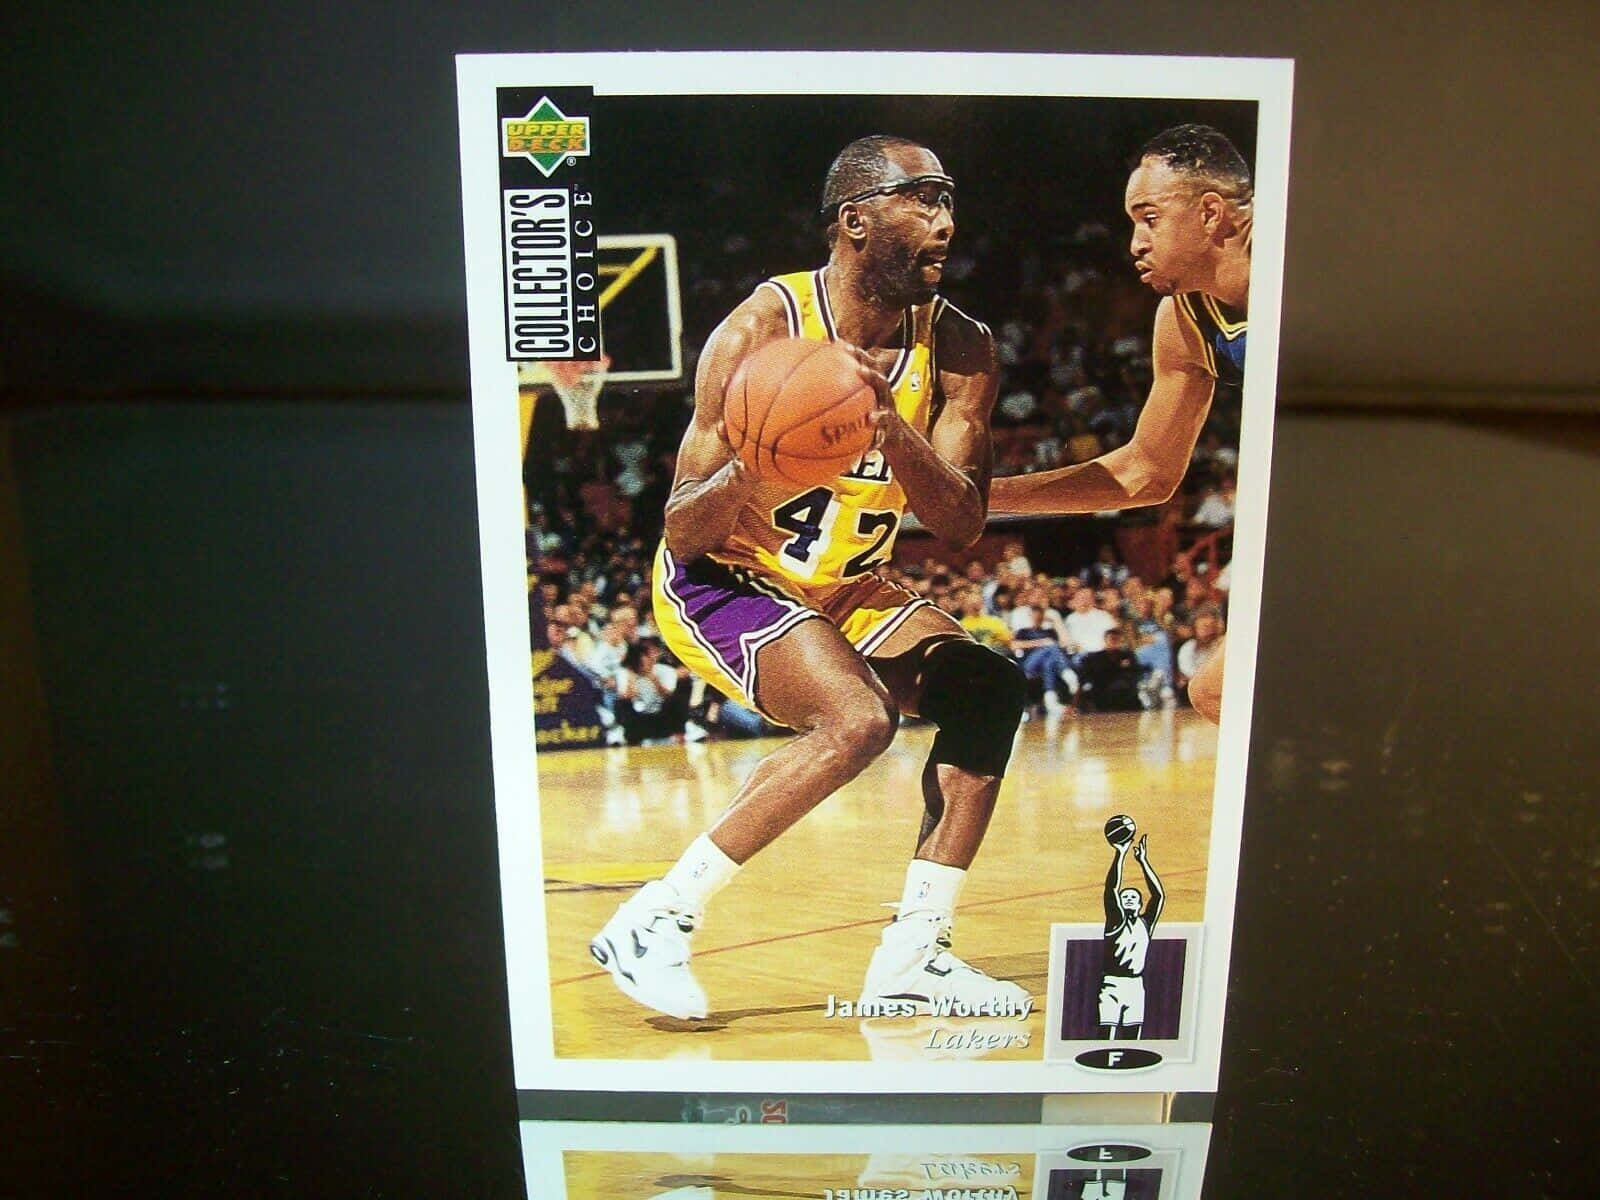 Jamesworthy 1994 Nba Lakers Foto-karte Wallpaper